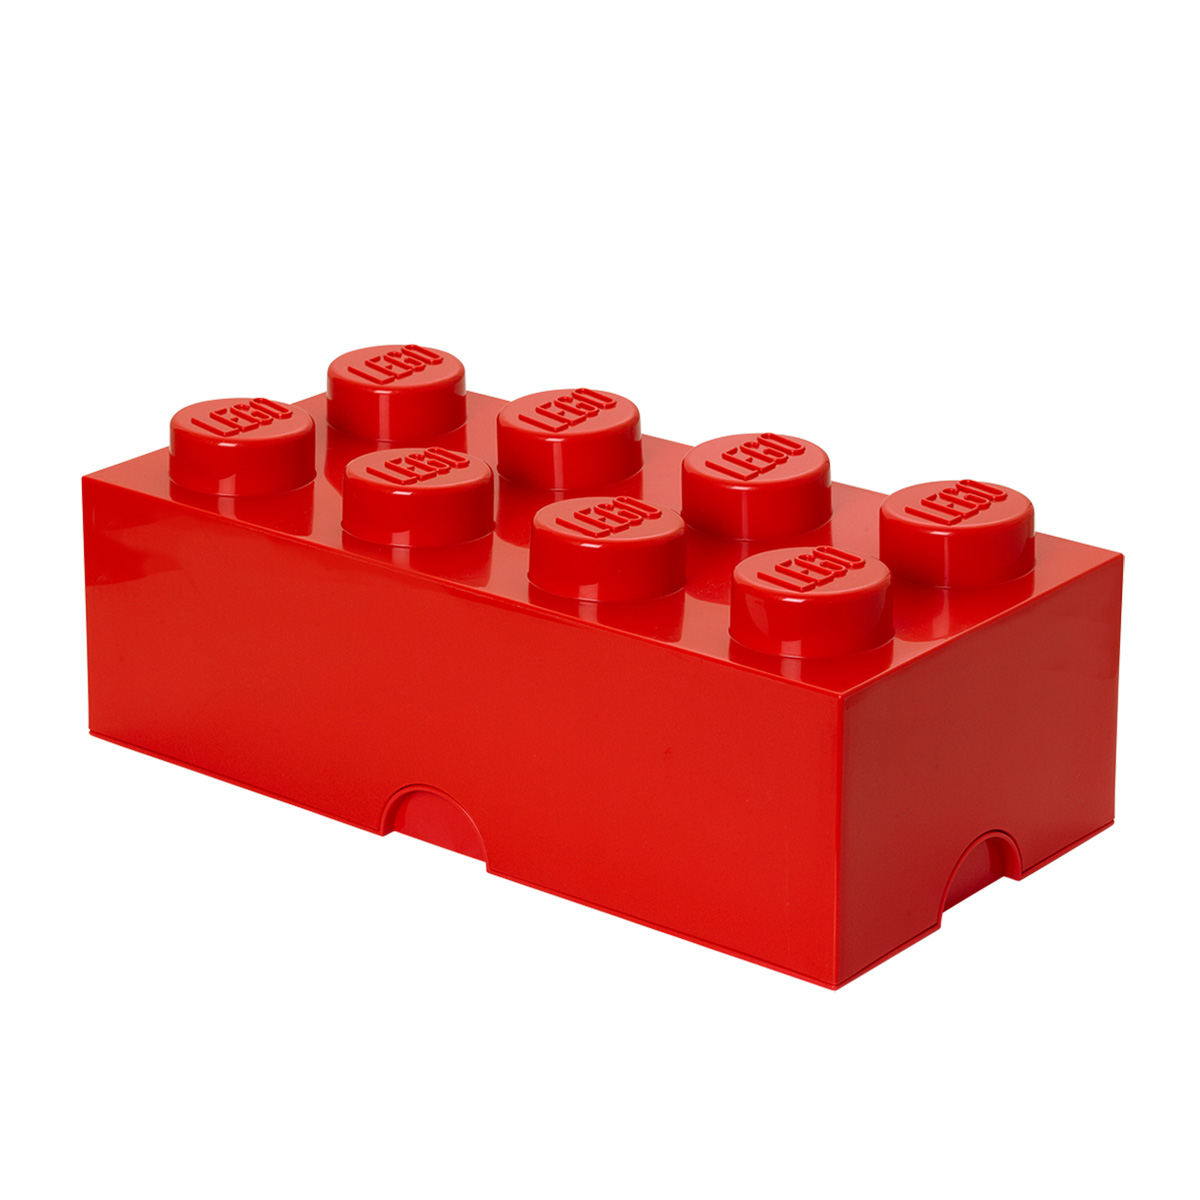 LEGO® Storage Brick - Iconic orgnanizer - Nordic Houseware Group